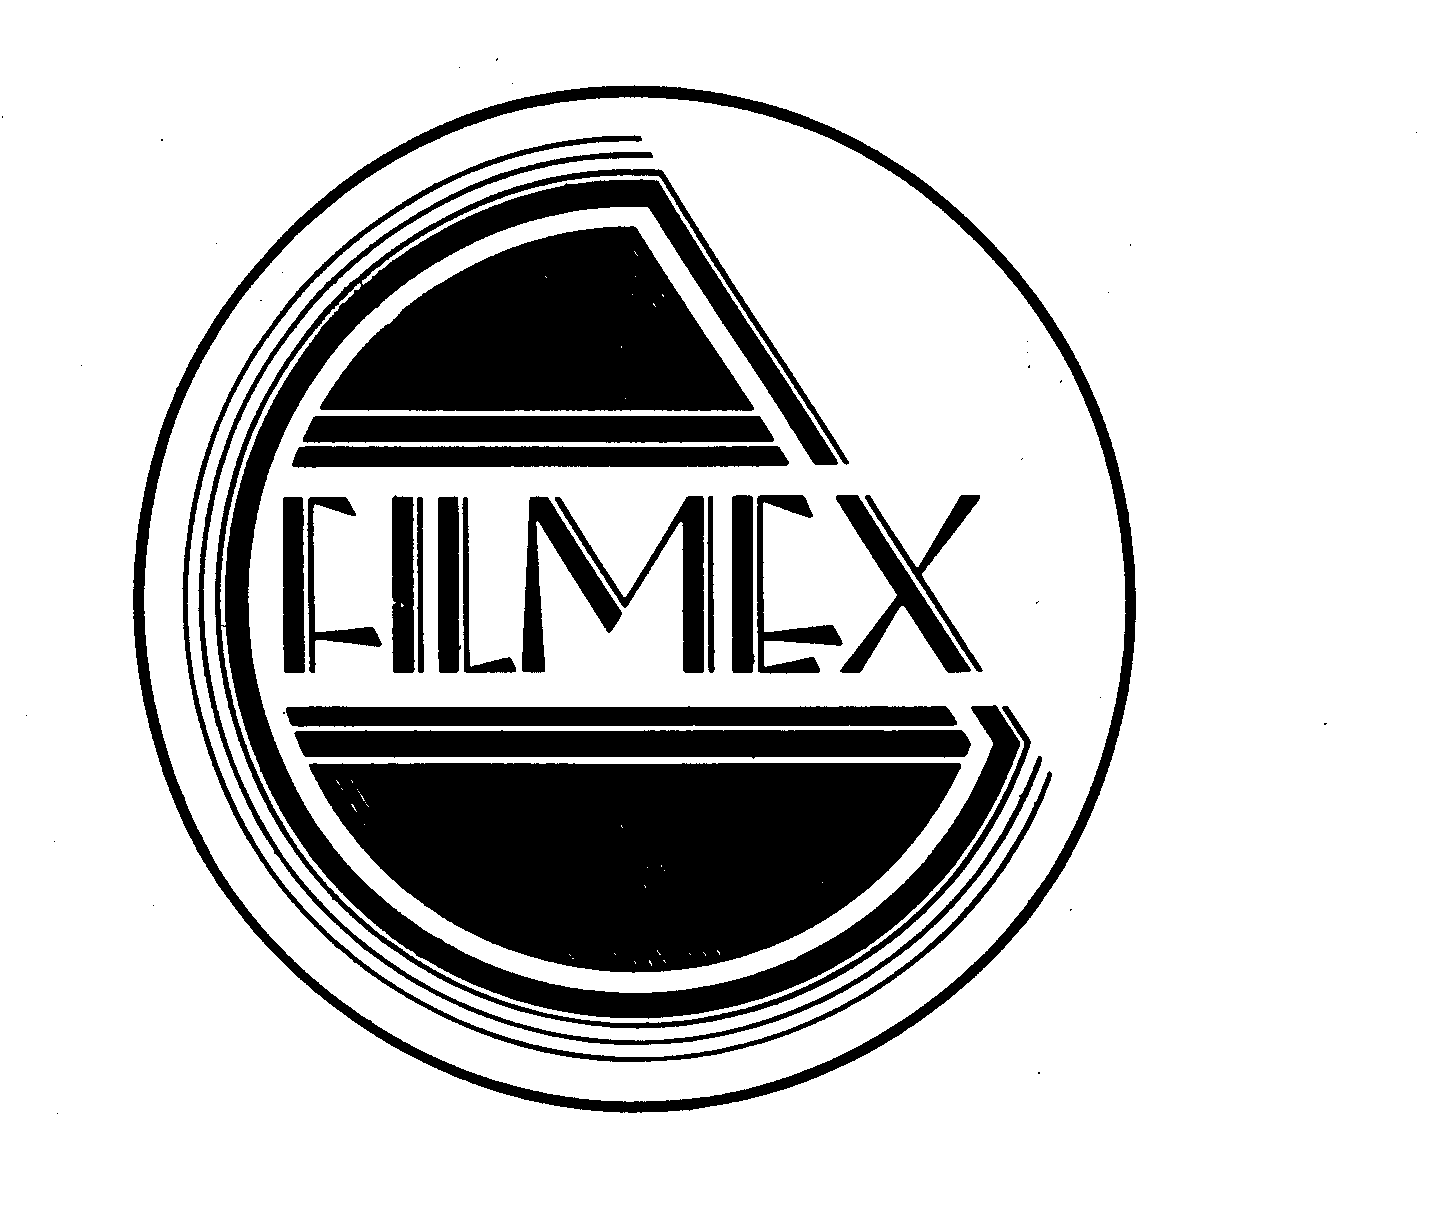 Trademark Logo FILMEX